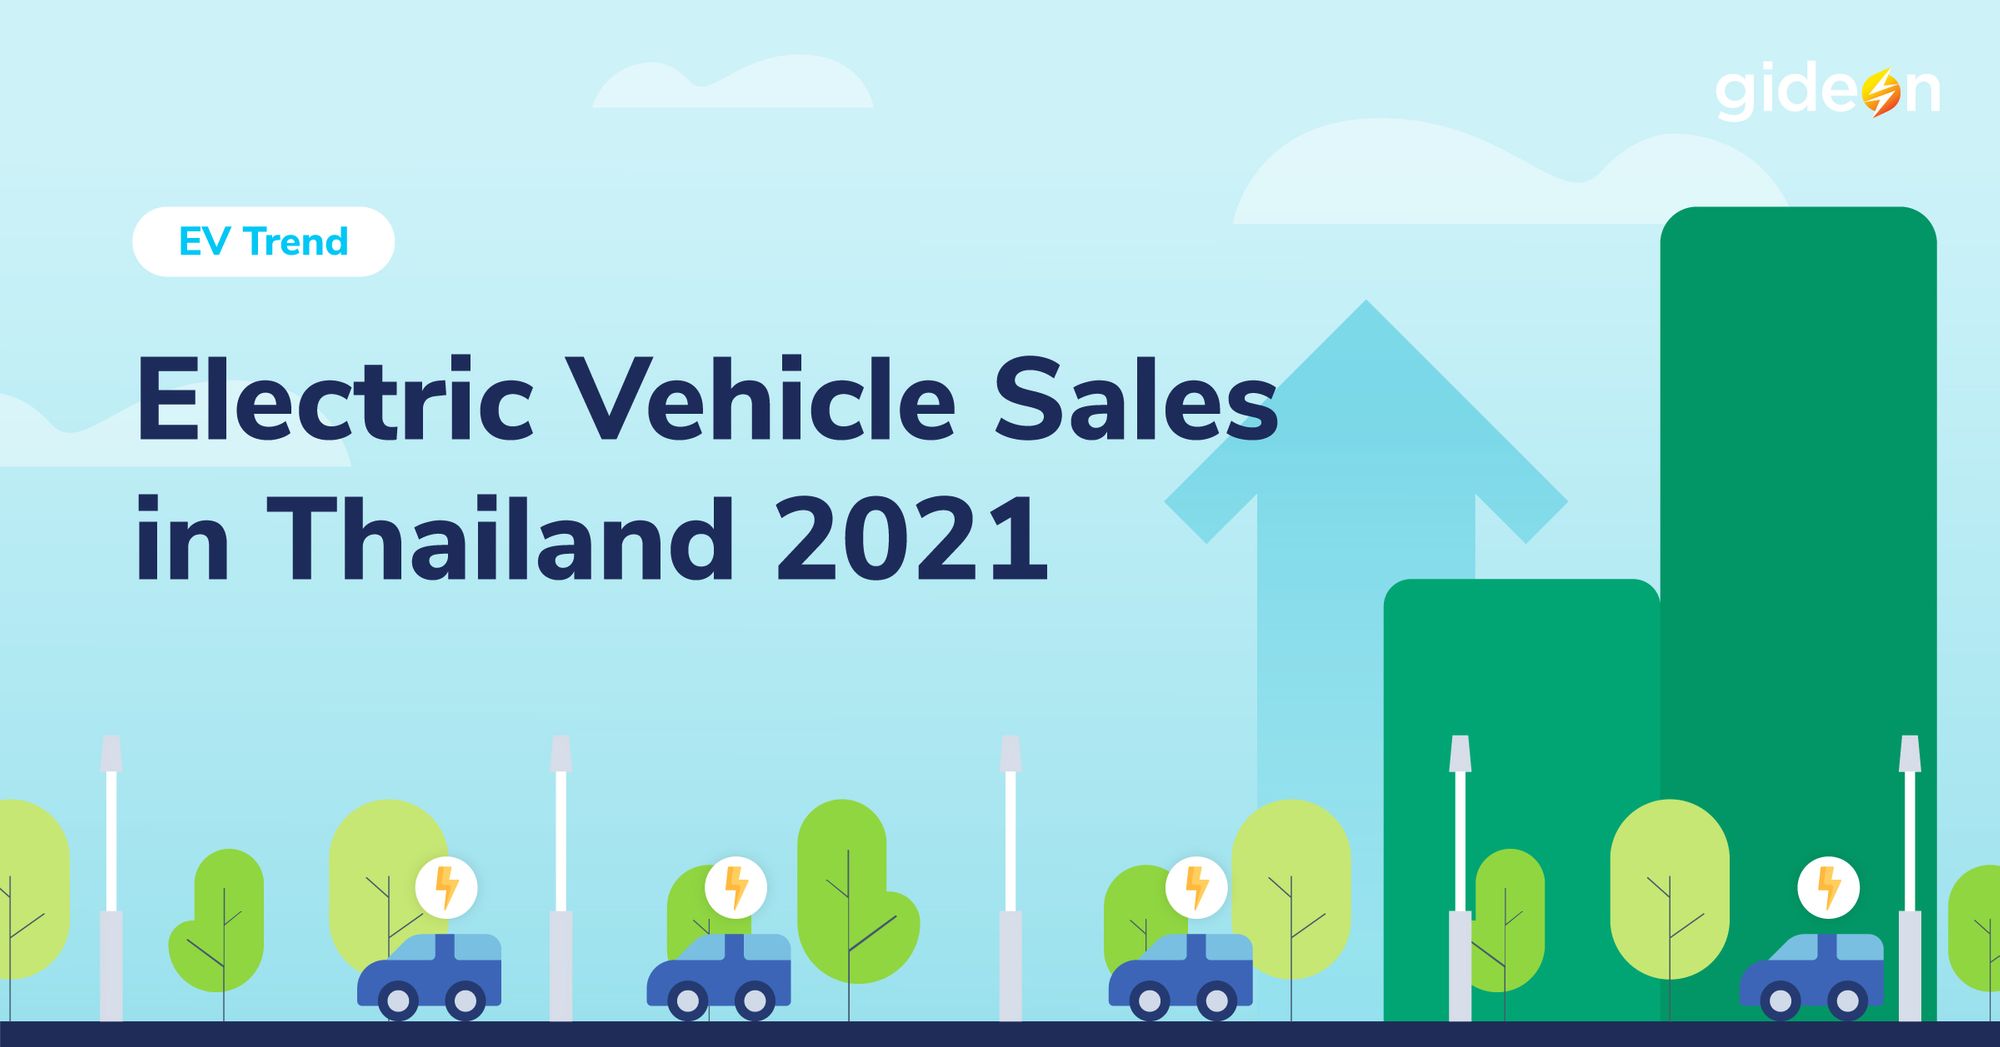 ส่องจำนวนรถยนต์ไฟฟ้า (EV) ในไทย และแนวโน้มของตลาดรถยนต์ไฟฟ้าในปี 2021 กัน